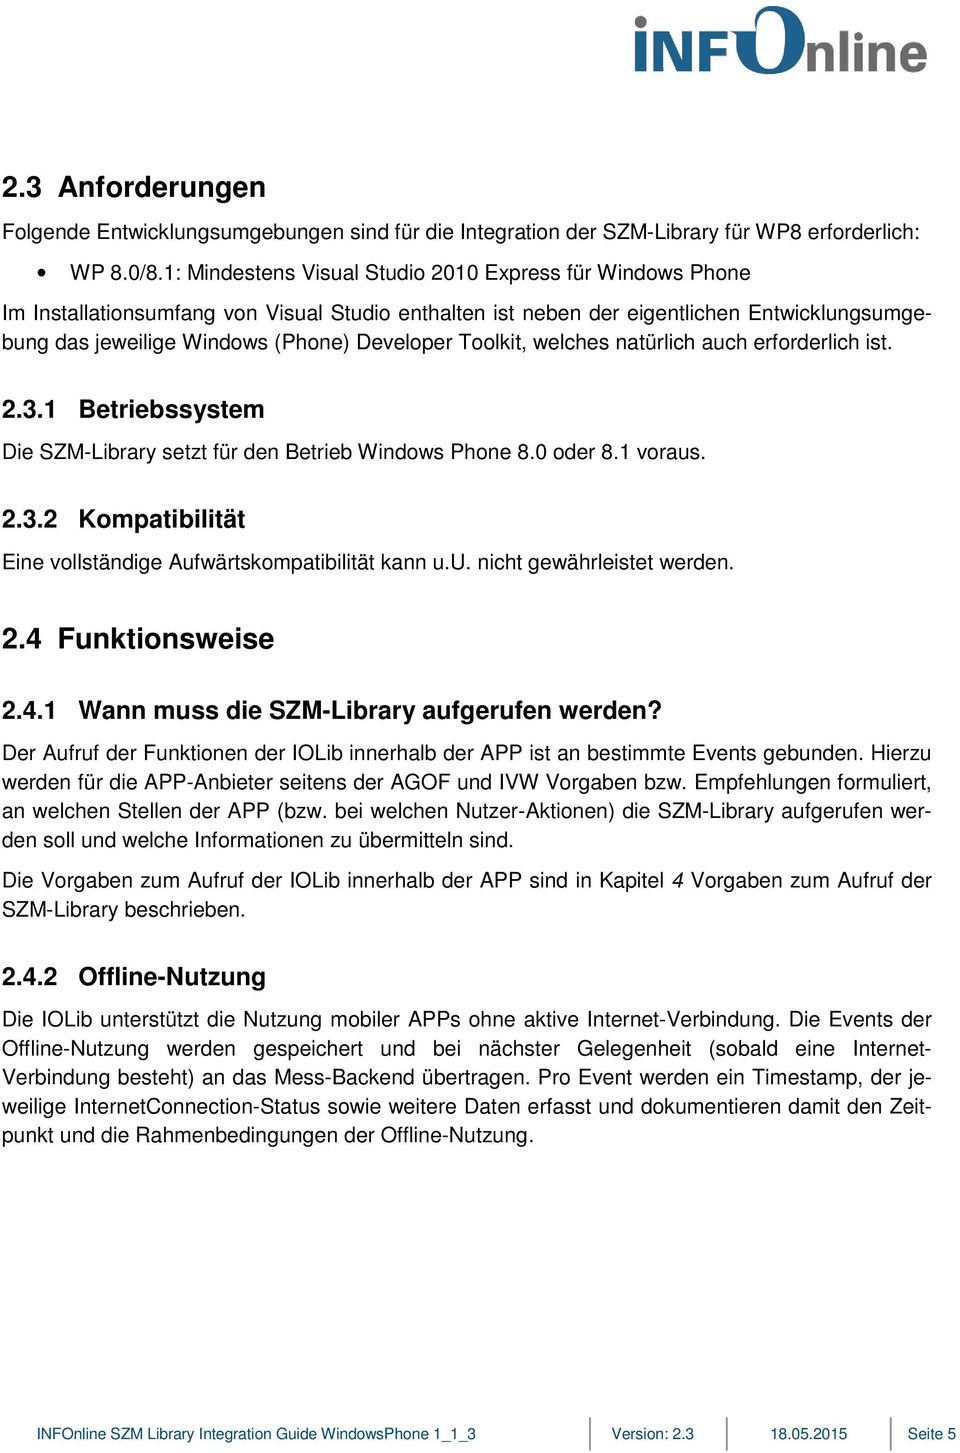 Toolkit, welches natürlich auch erforderlich ist. 2.3.1 Betriebssystem Die SZM-Library setzt für den Betrieb Windows Phone 8.0 oder 8.1 voraus. 2.3.2 Kompatibilität Eine vollständige Aufwärtskompatibilität kann u.